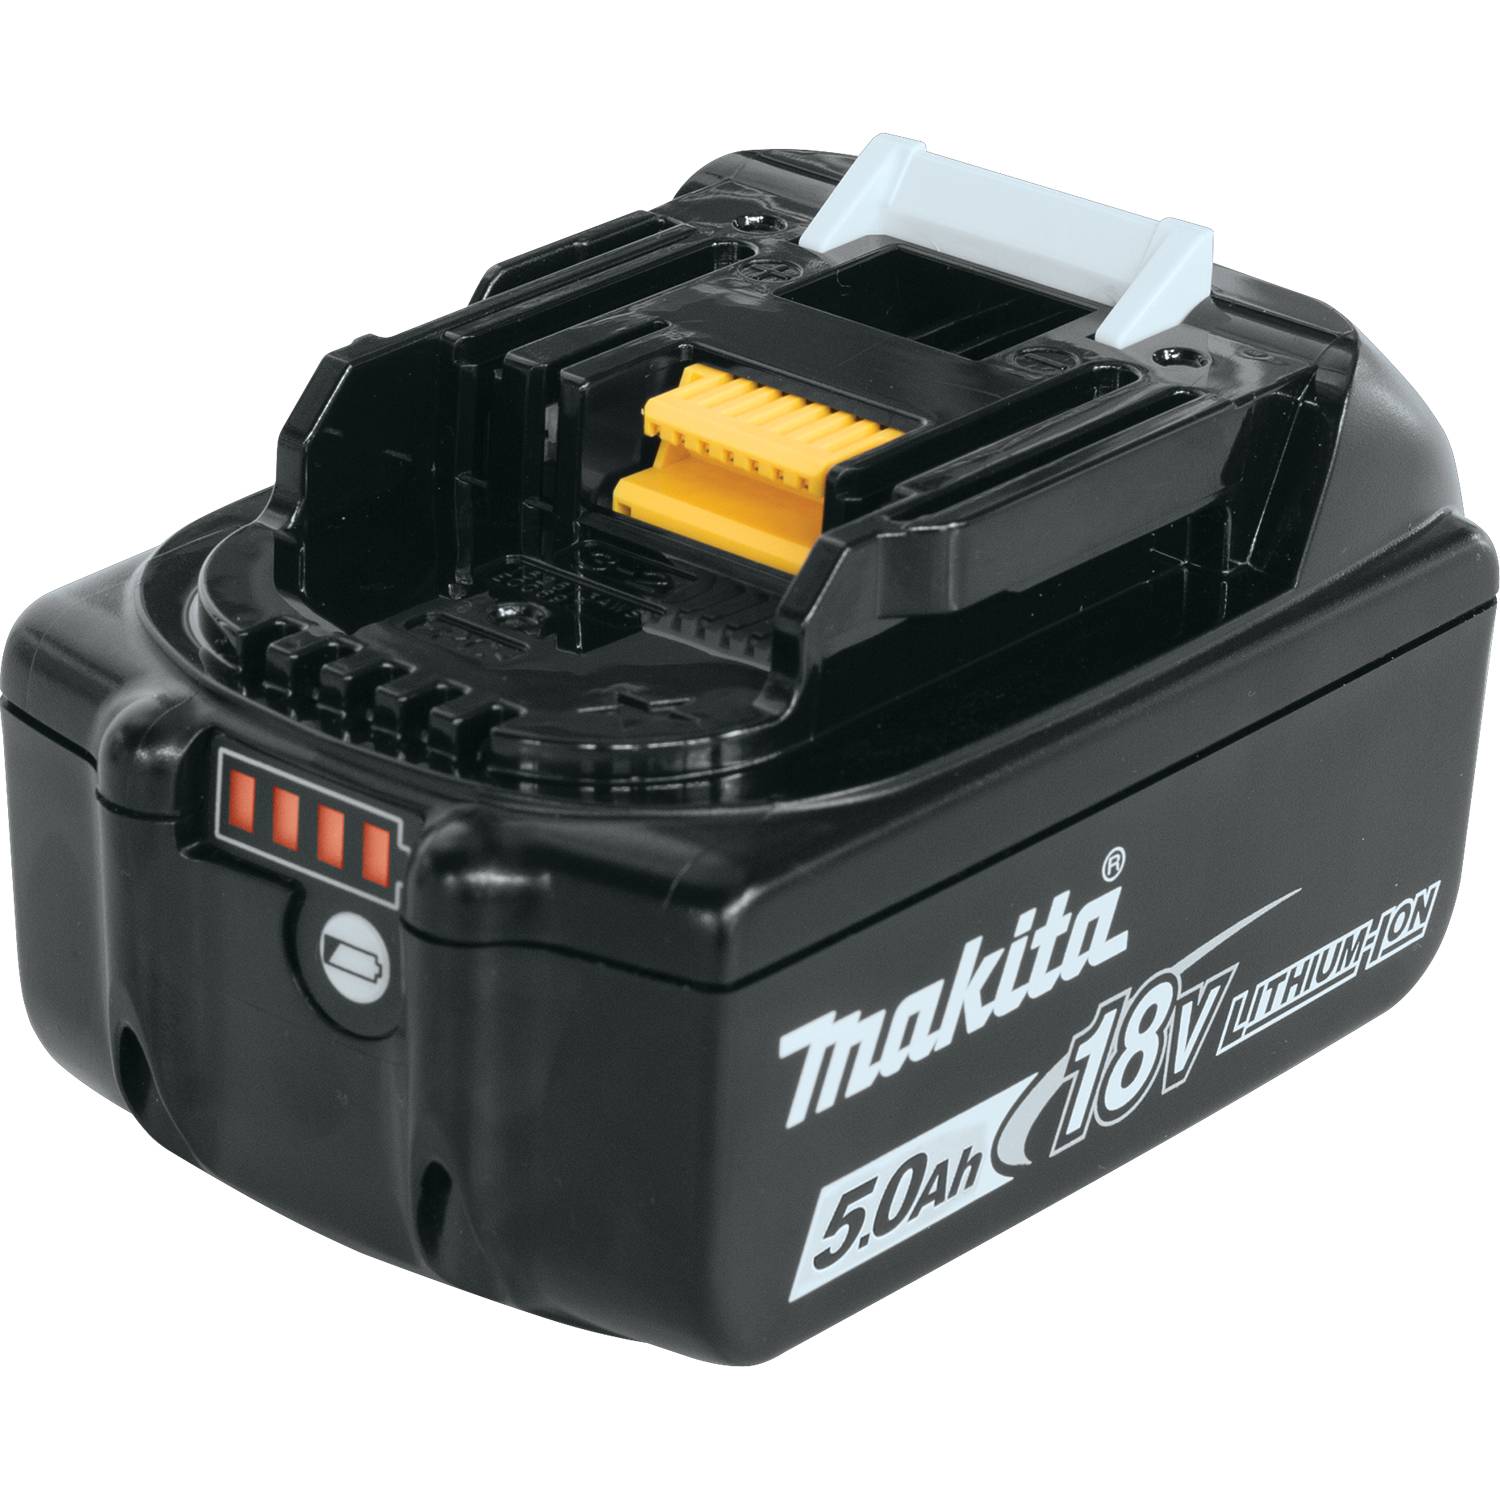 BL1850B-2 Makita Battery Pack, 18V 5.0AH